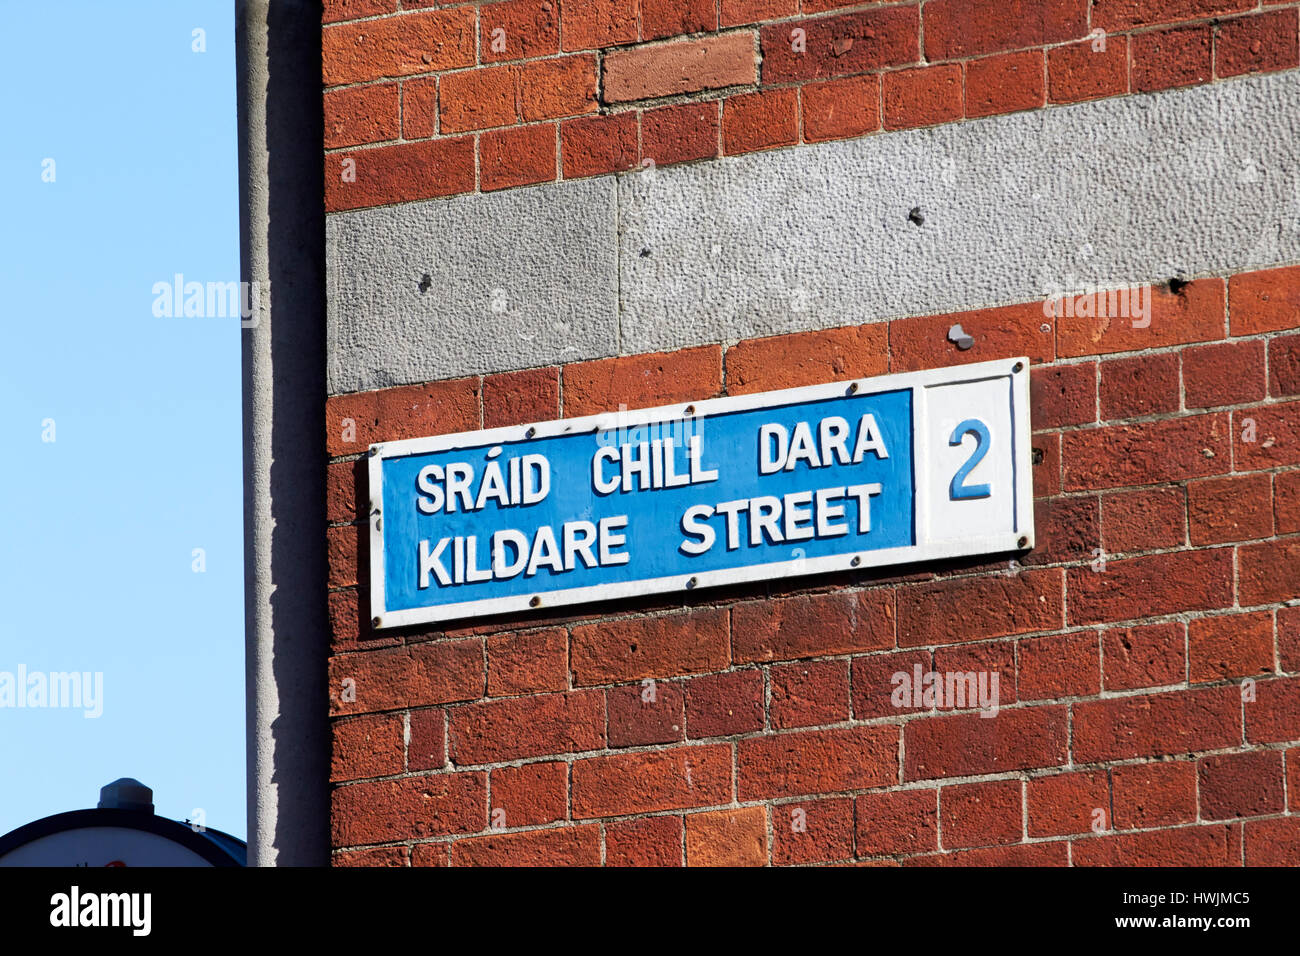 blaue und weiße zweisprachige englische irische Straße melden für Kildare street in Dublin Irland Stockfoto